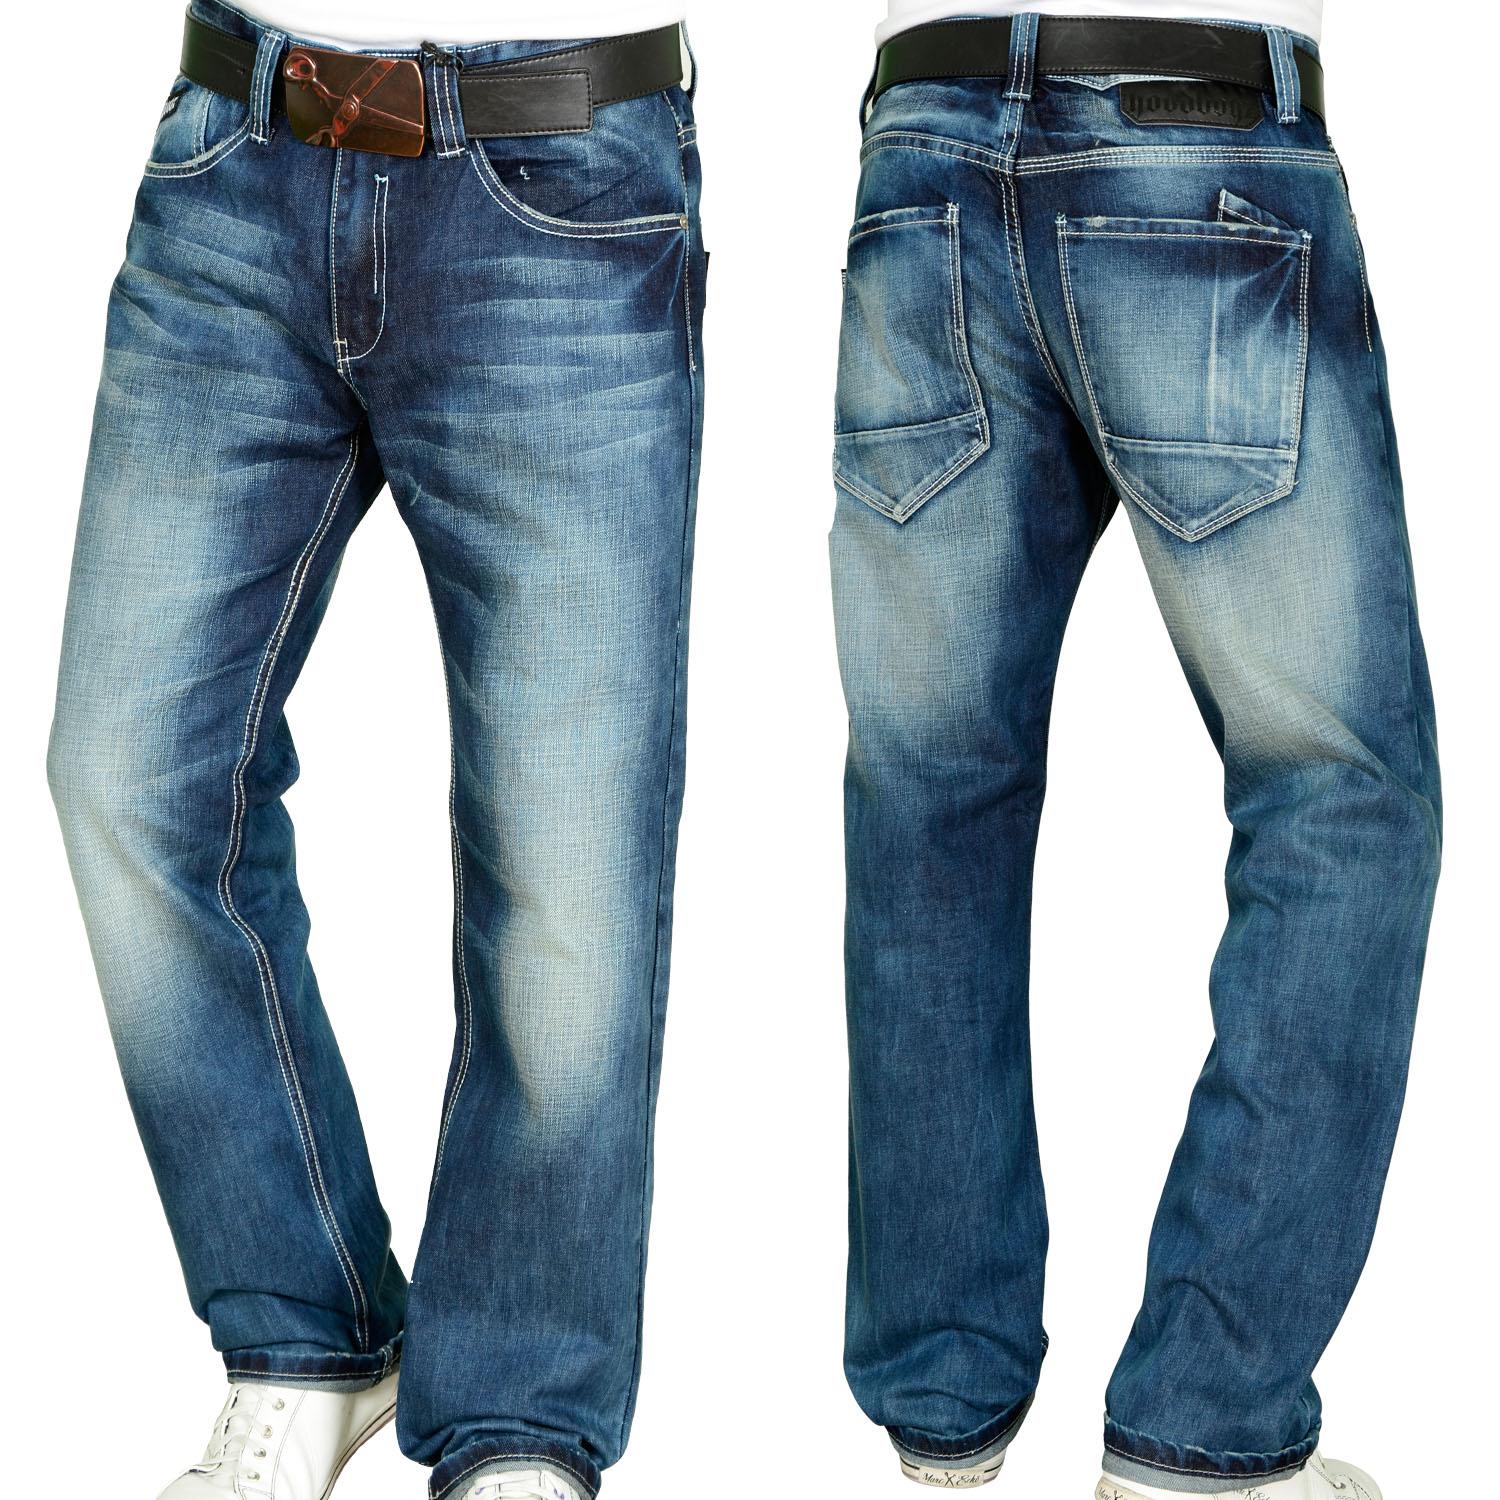 Foto Hoodboyz Dusty Indigo Wash Hombres Loose Fit Jeans De Color Azul Os... foto 648050